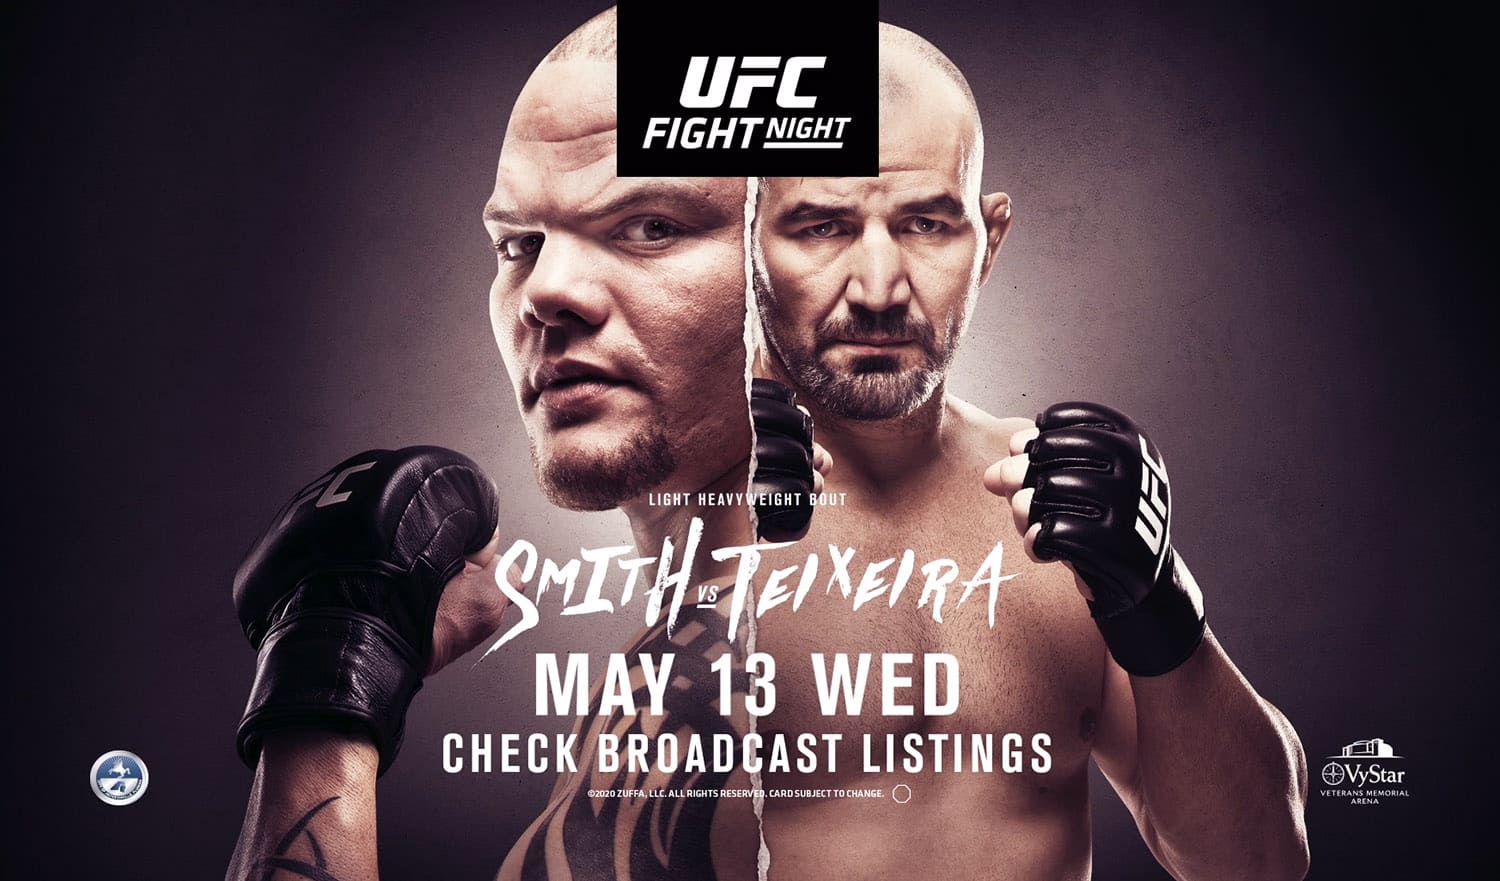 UFC Fight Night 171: Смит - Тейшейра дата проведения, кард, участники и результаты